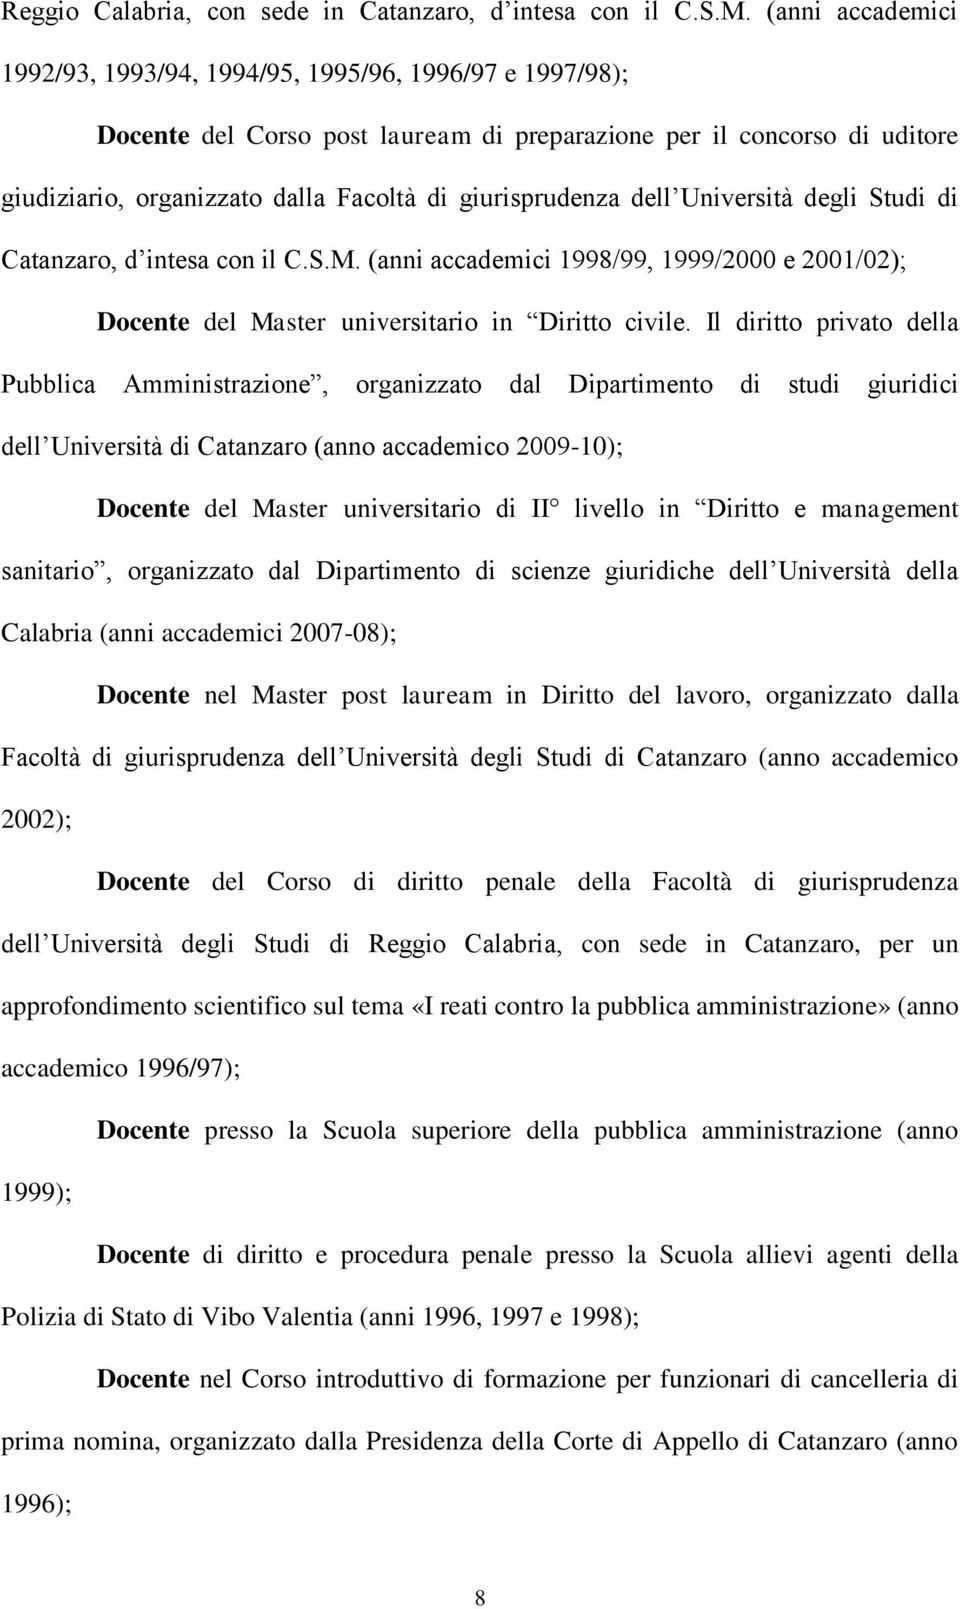 giurisprudenza dell Università degli Studi di Catanzaro, d intesa con il C.S.M. (anni accademici 1998/99, 1999/2000 e 2001/02); Docente del Master universitario in Diritto civile.